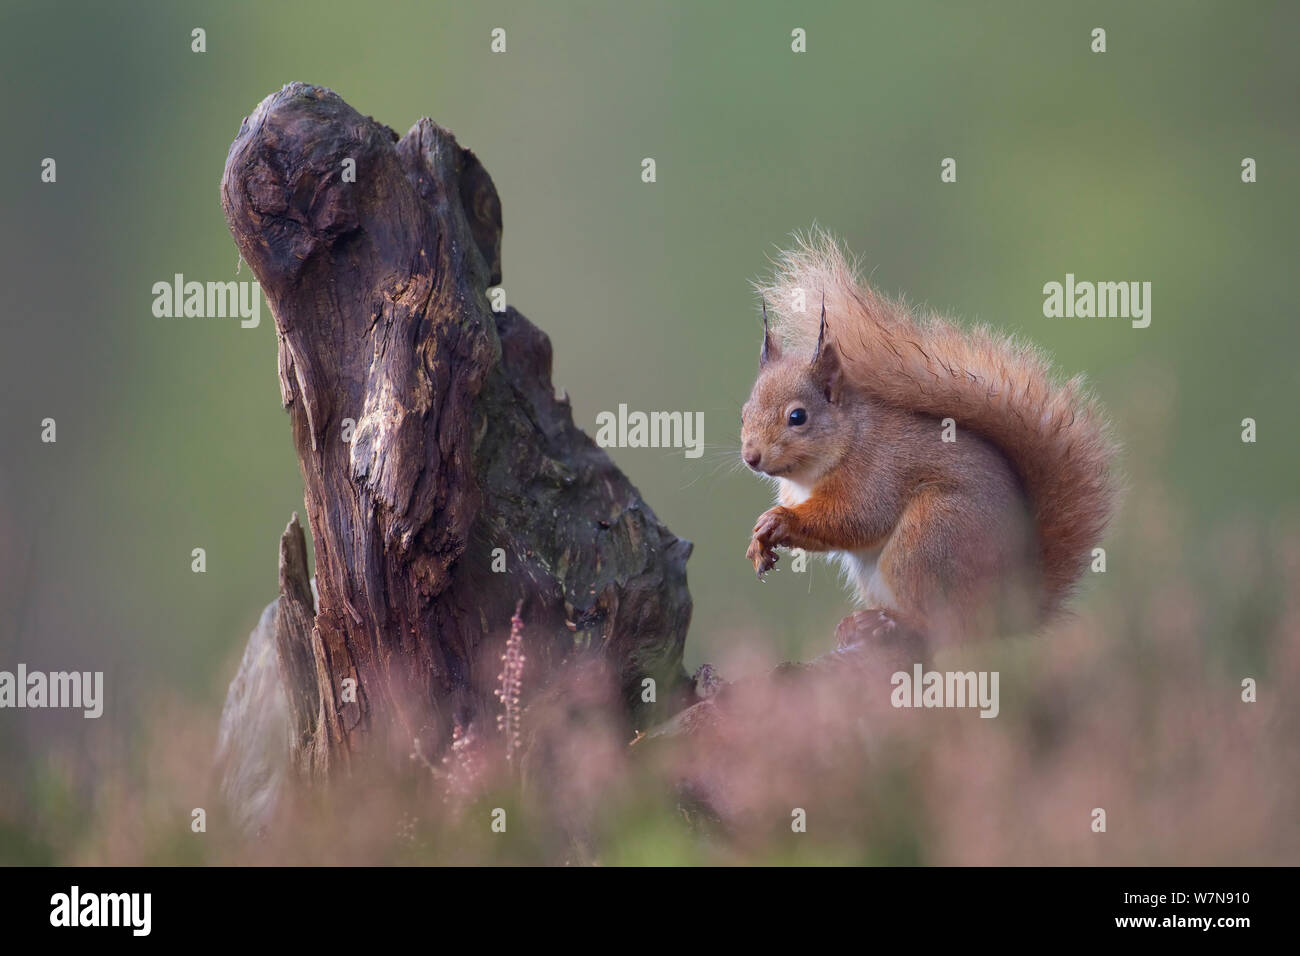 Red scoiattolo (Sciurus vulgaris) nella foresta di pini. Glenfeshie, Scozia, Dicembre. Foto Stock